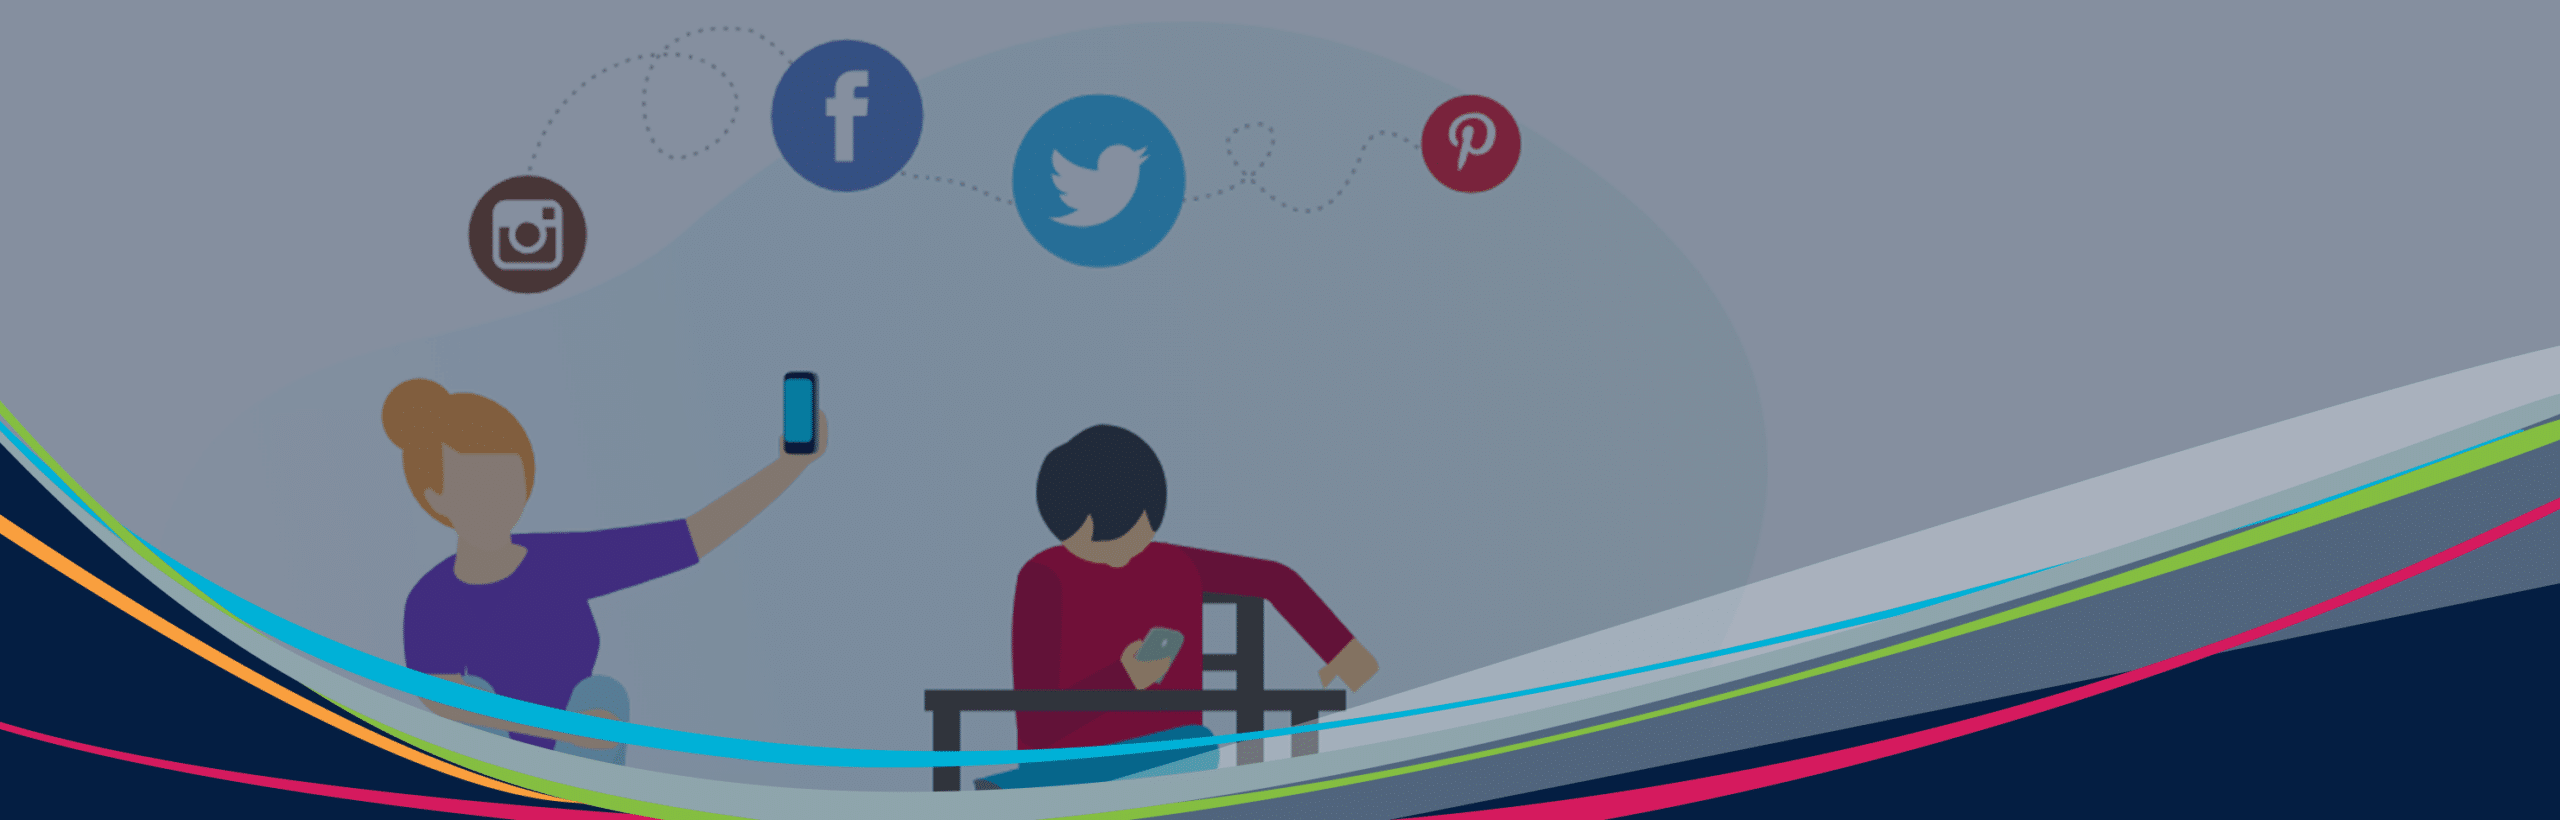 Hero illustrierte Grafik von Schülern mit schwebenden Geräten und Social-Media-Symbolen im Hintergrund